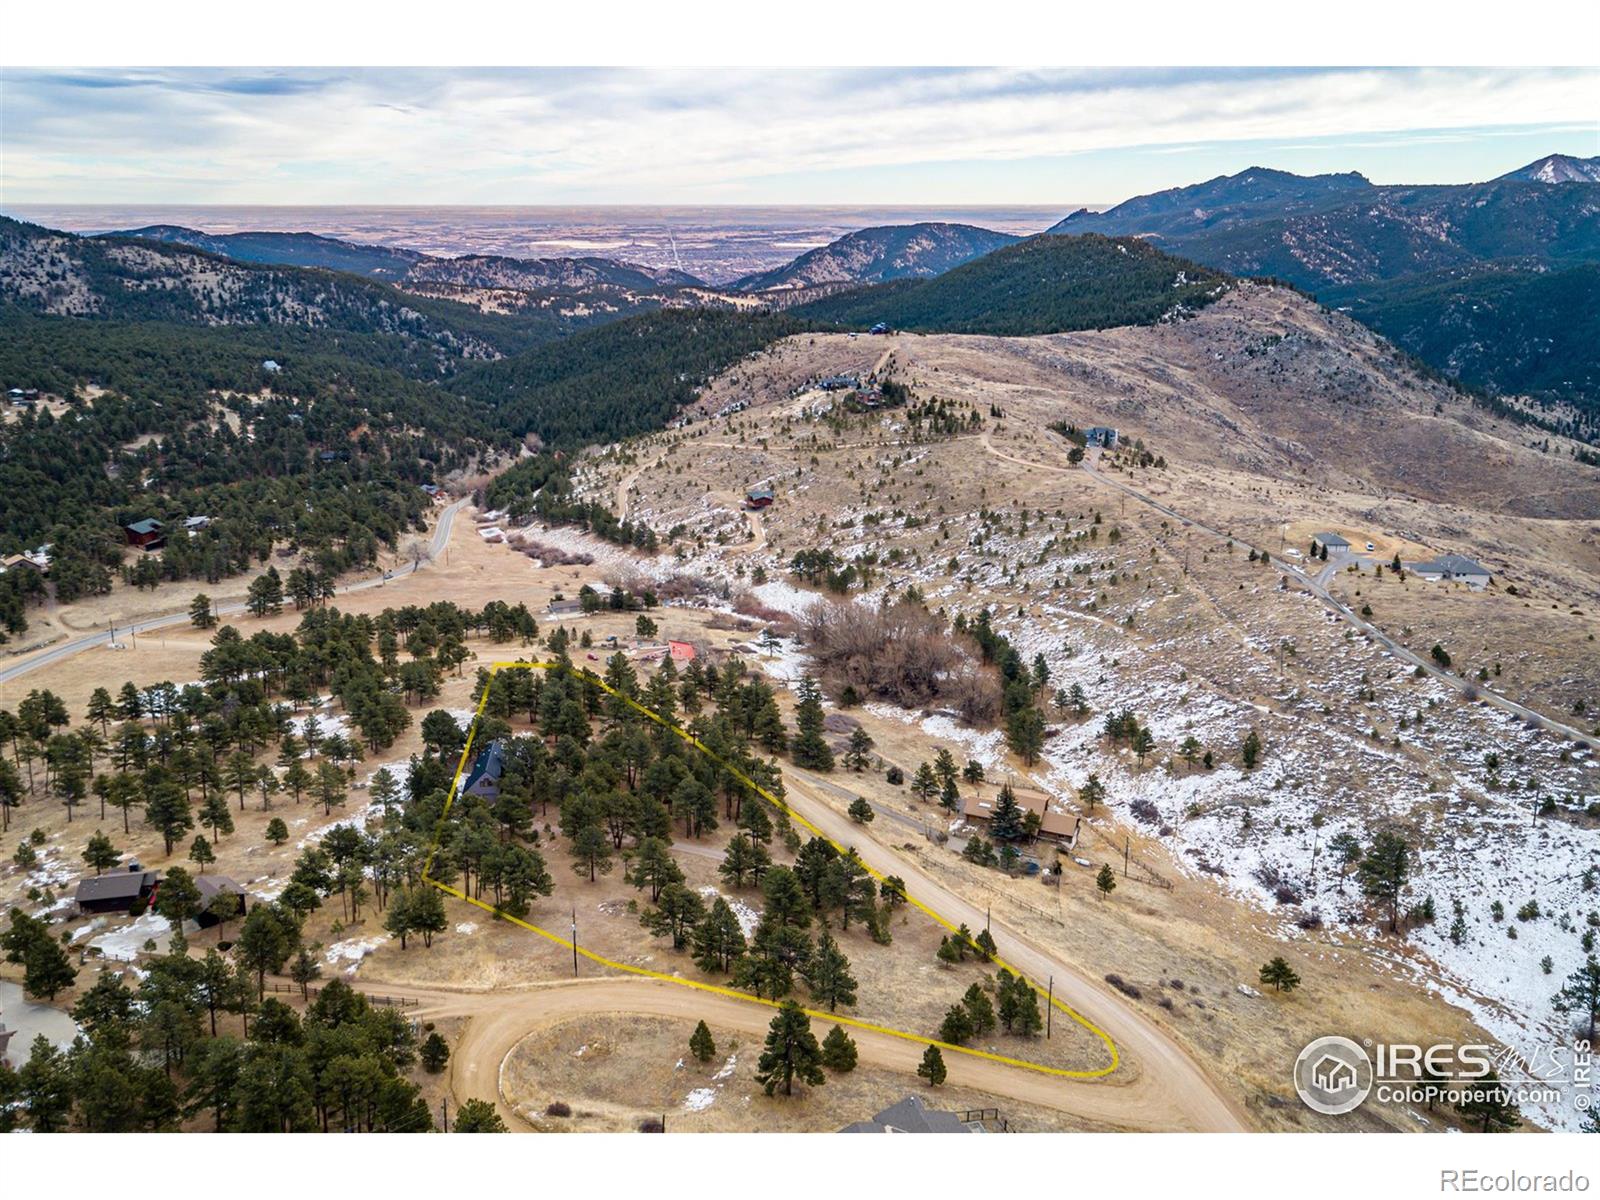 MLS Image #27 for 164  lost angel road,boulder, Colorado